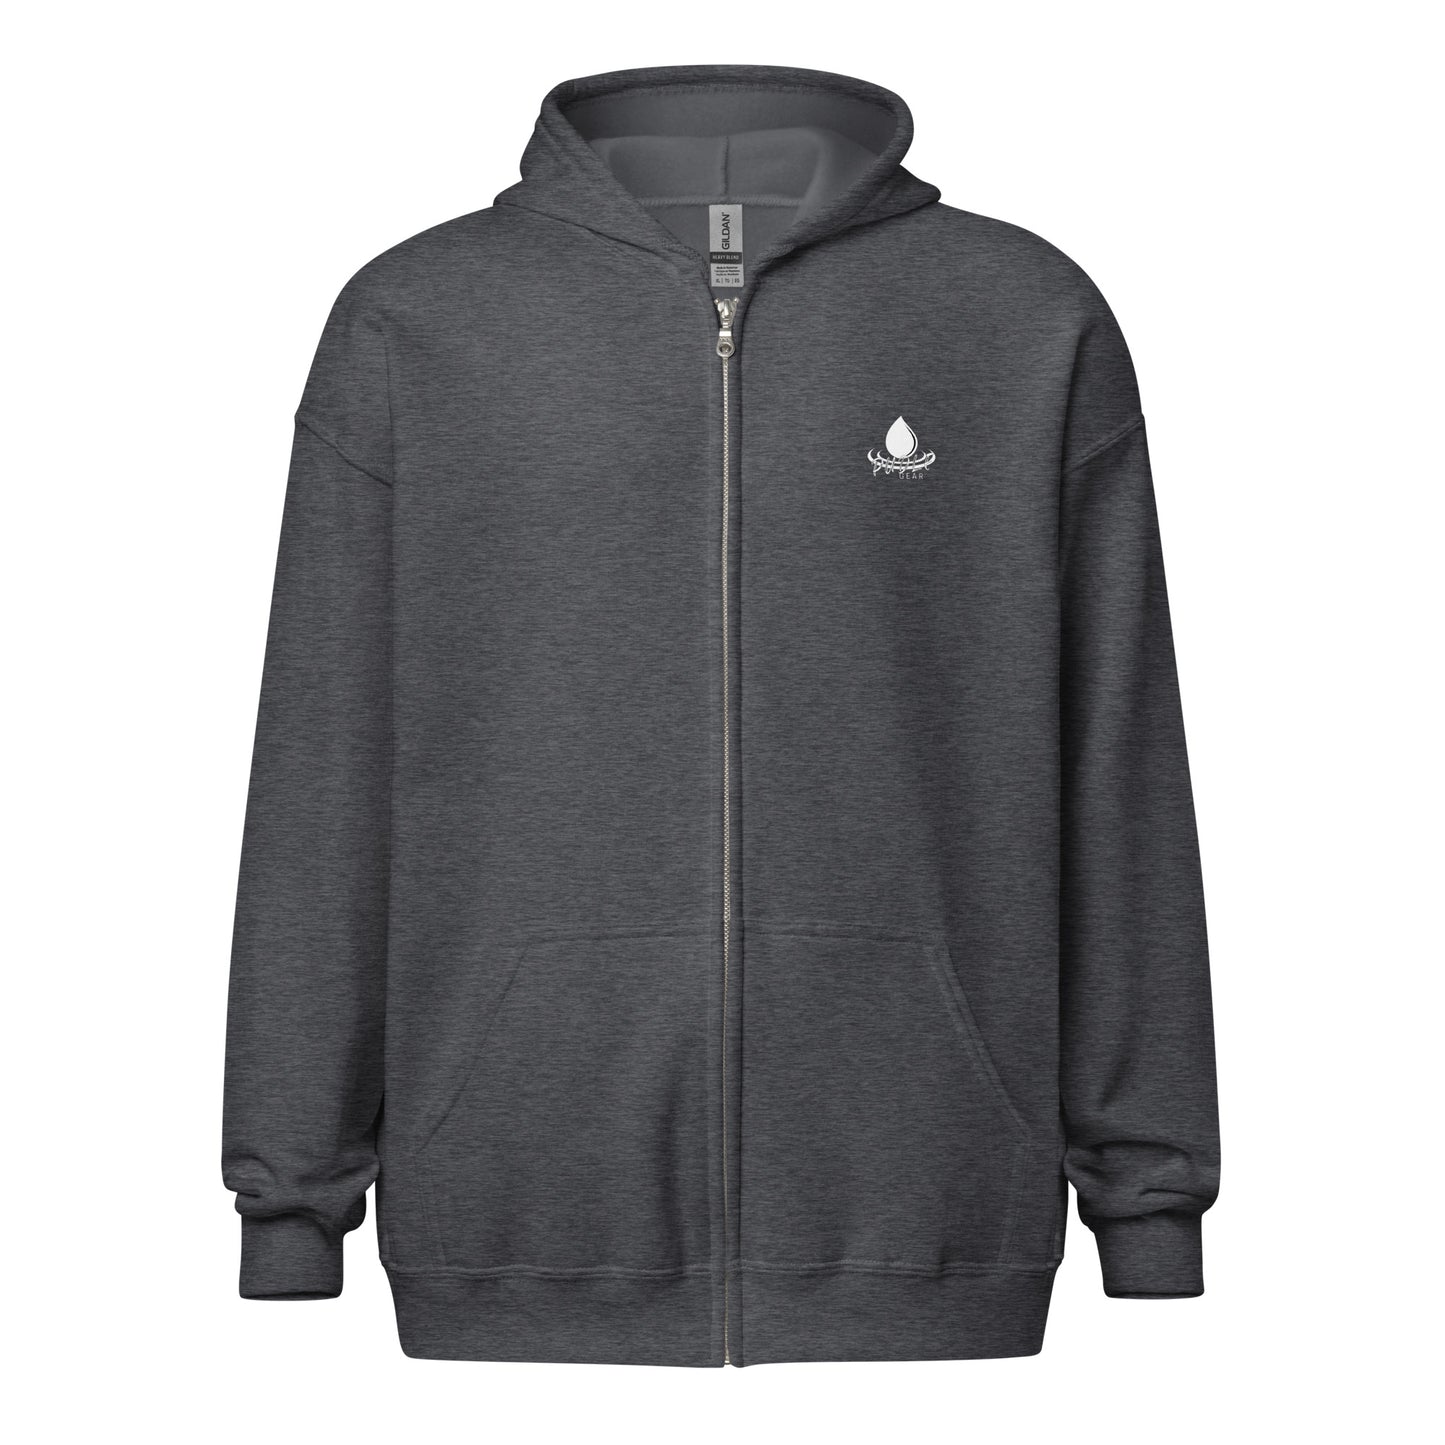 STORMWATER is One Word (back) - Unisex heavy blend zip hoodie